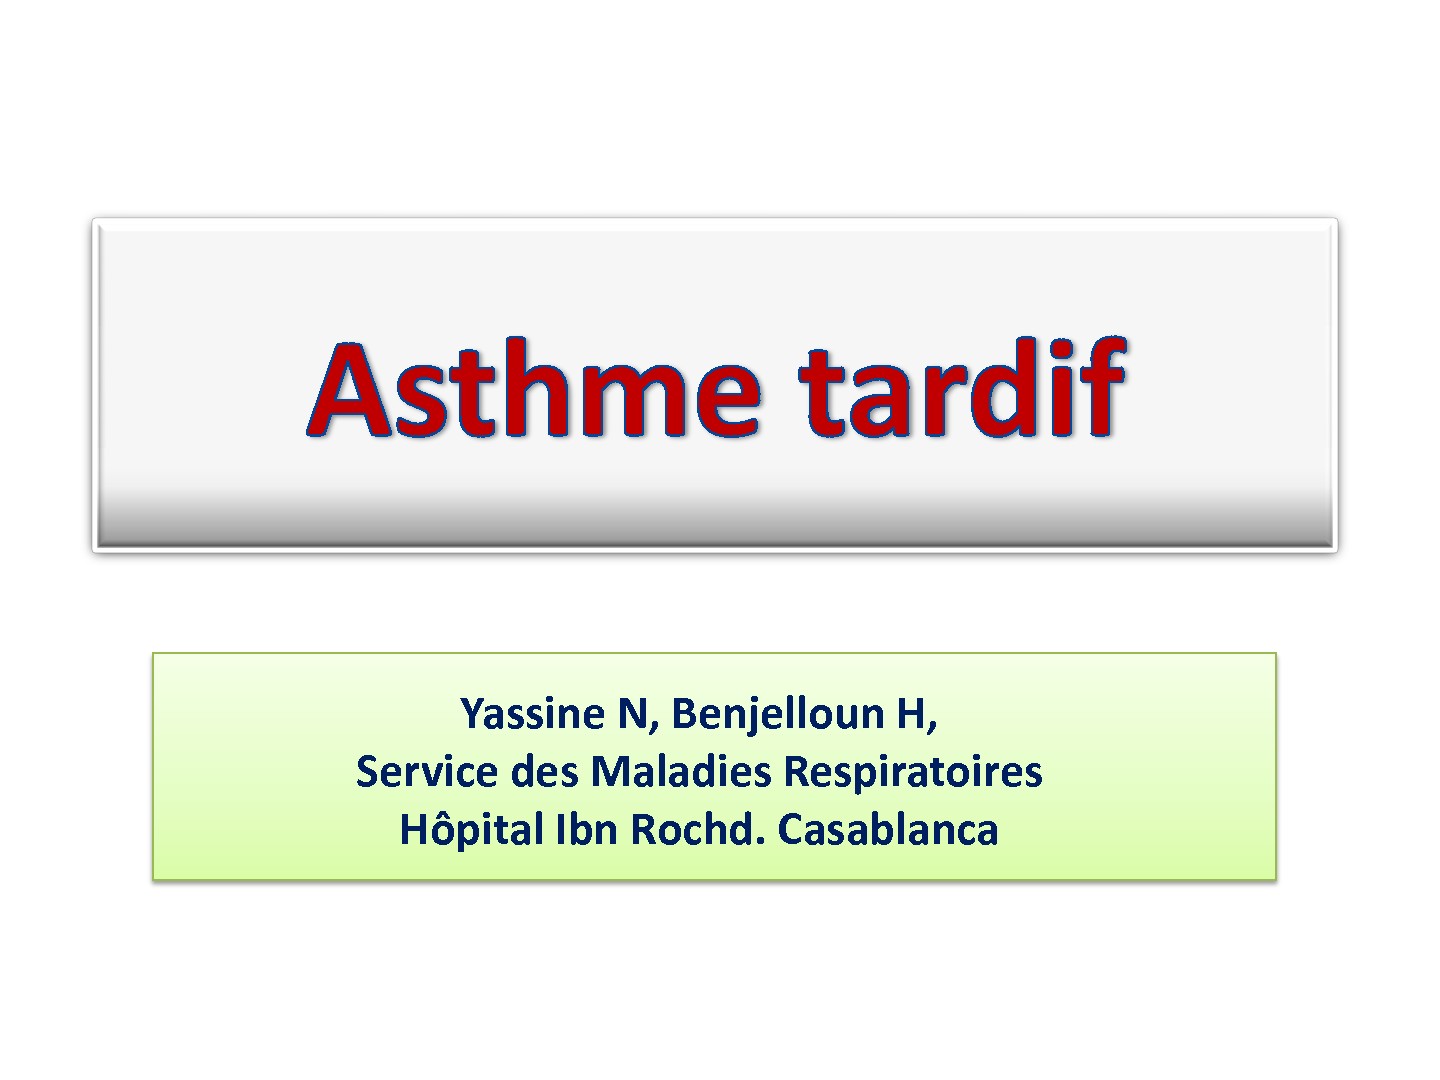 Asthme tardif. Yassine N, Benjelloun H